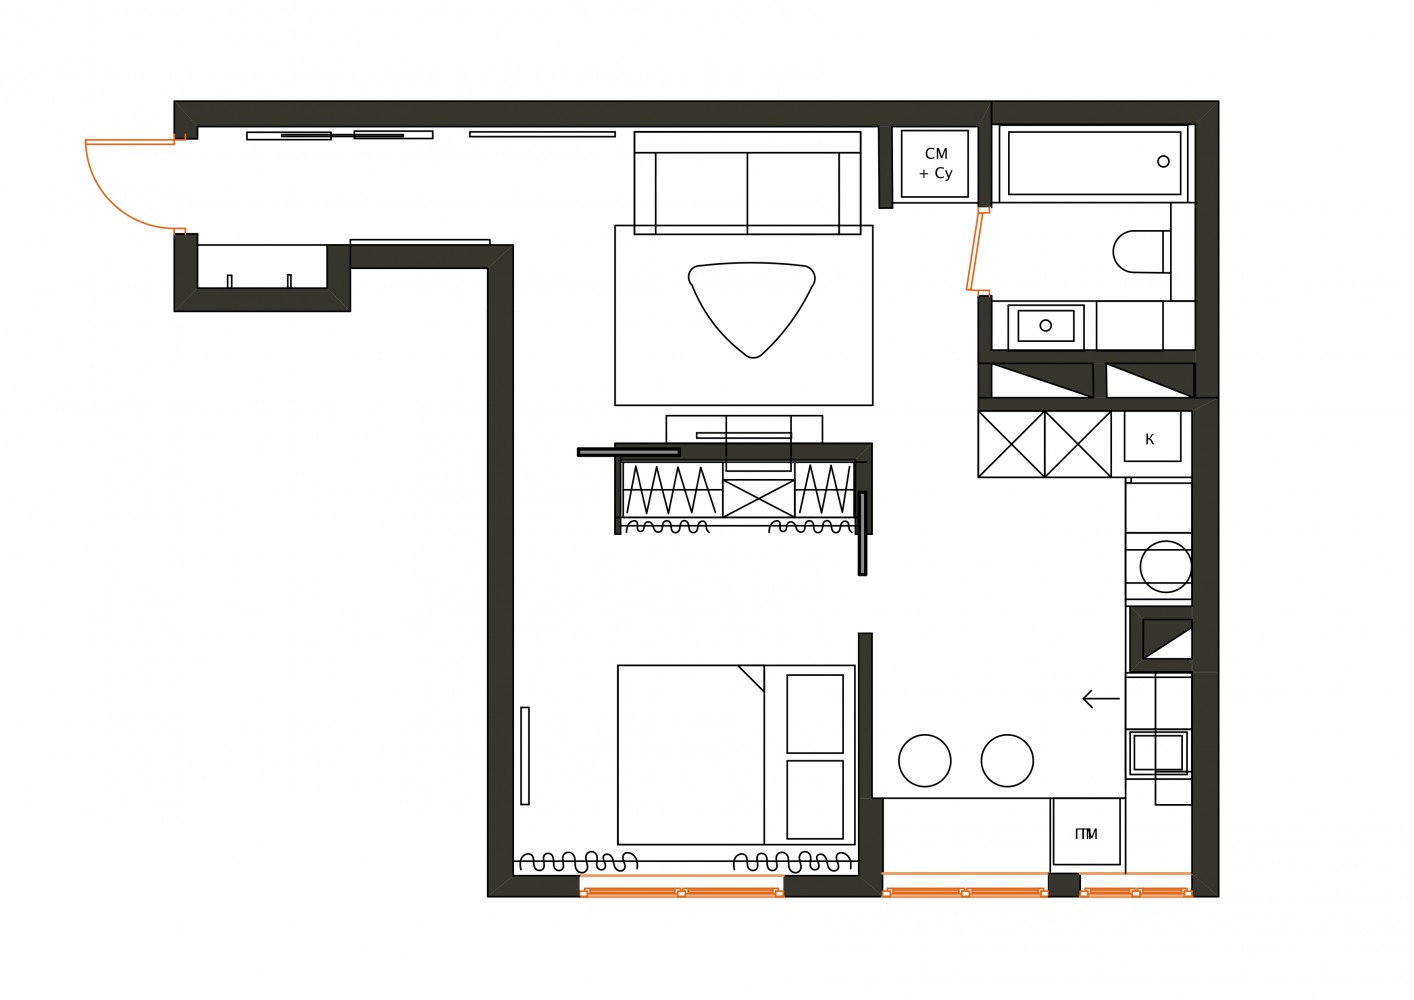 План перепланировки с расстановкой мебели  в дизайн-проекте  смарт- квартиры ЖК PARKLAND, 43 м.кв.— дизайнер Ирина Сазонова 